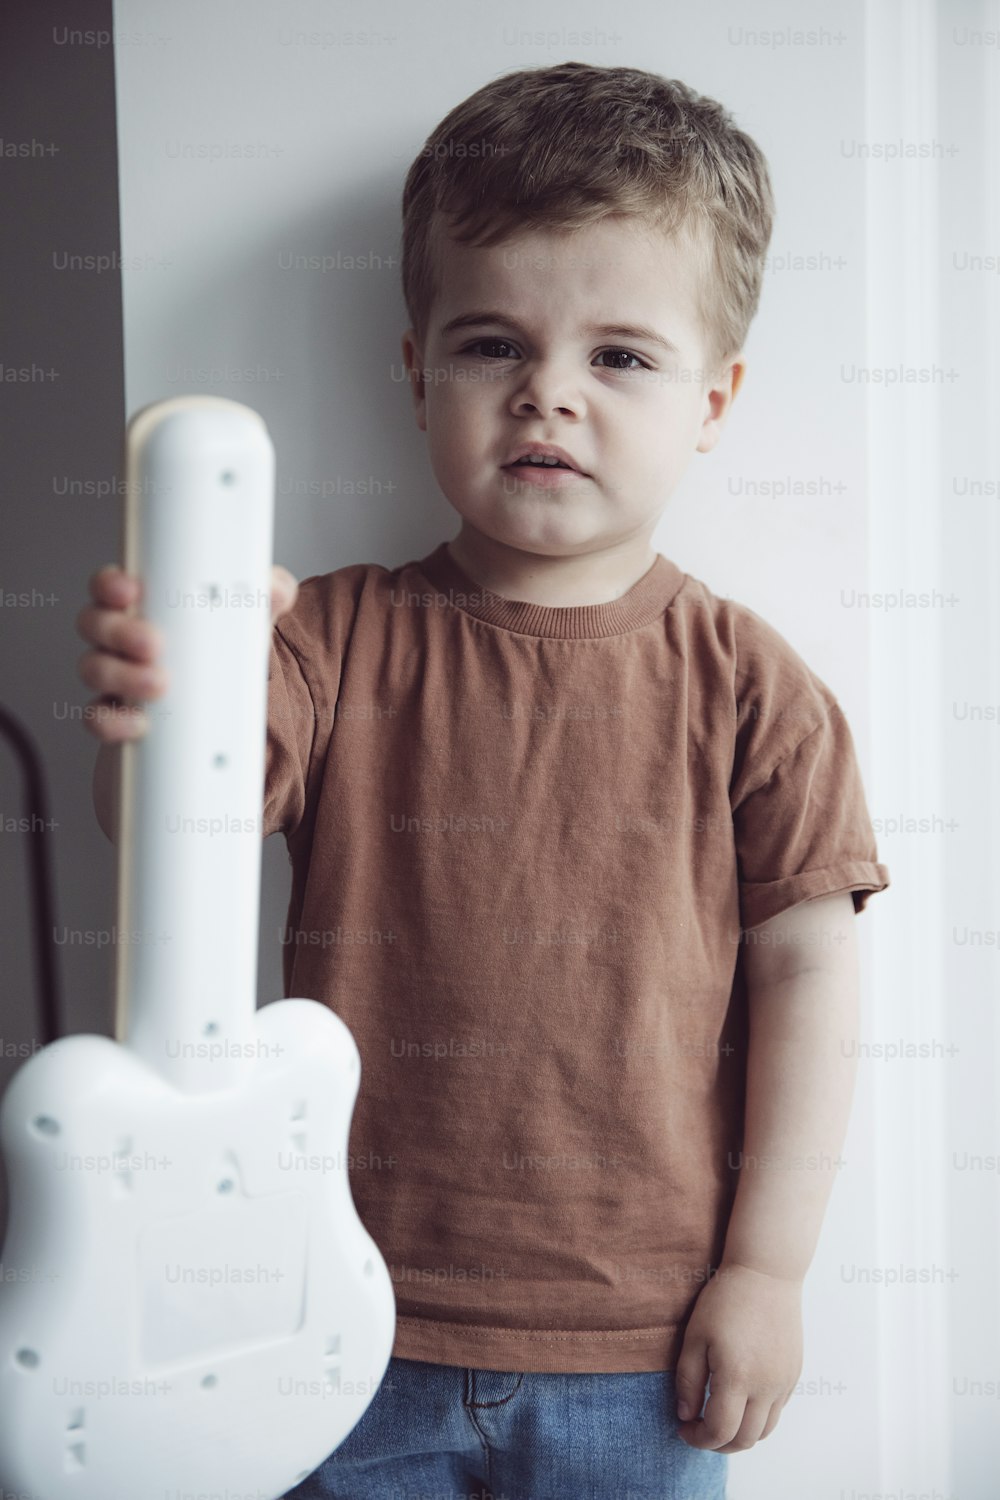 白いギターの形をした物体を持つ少年